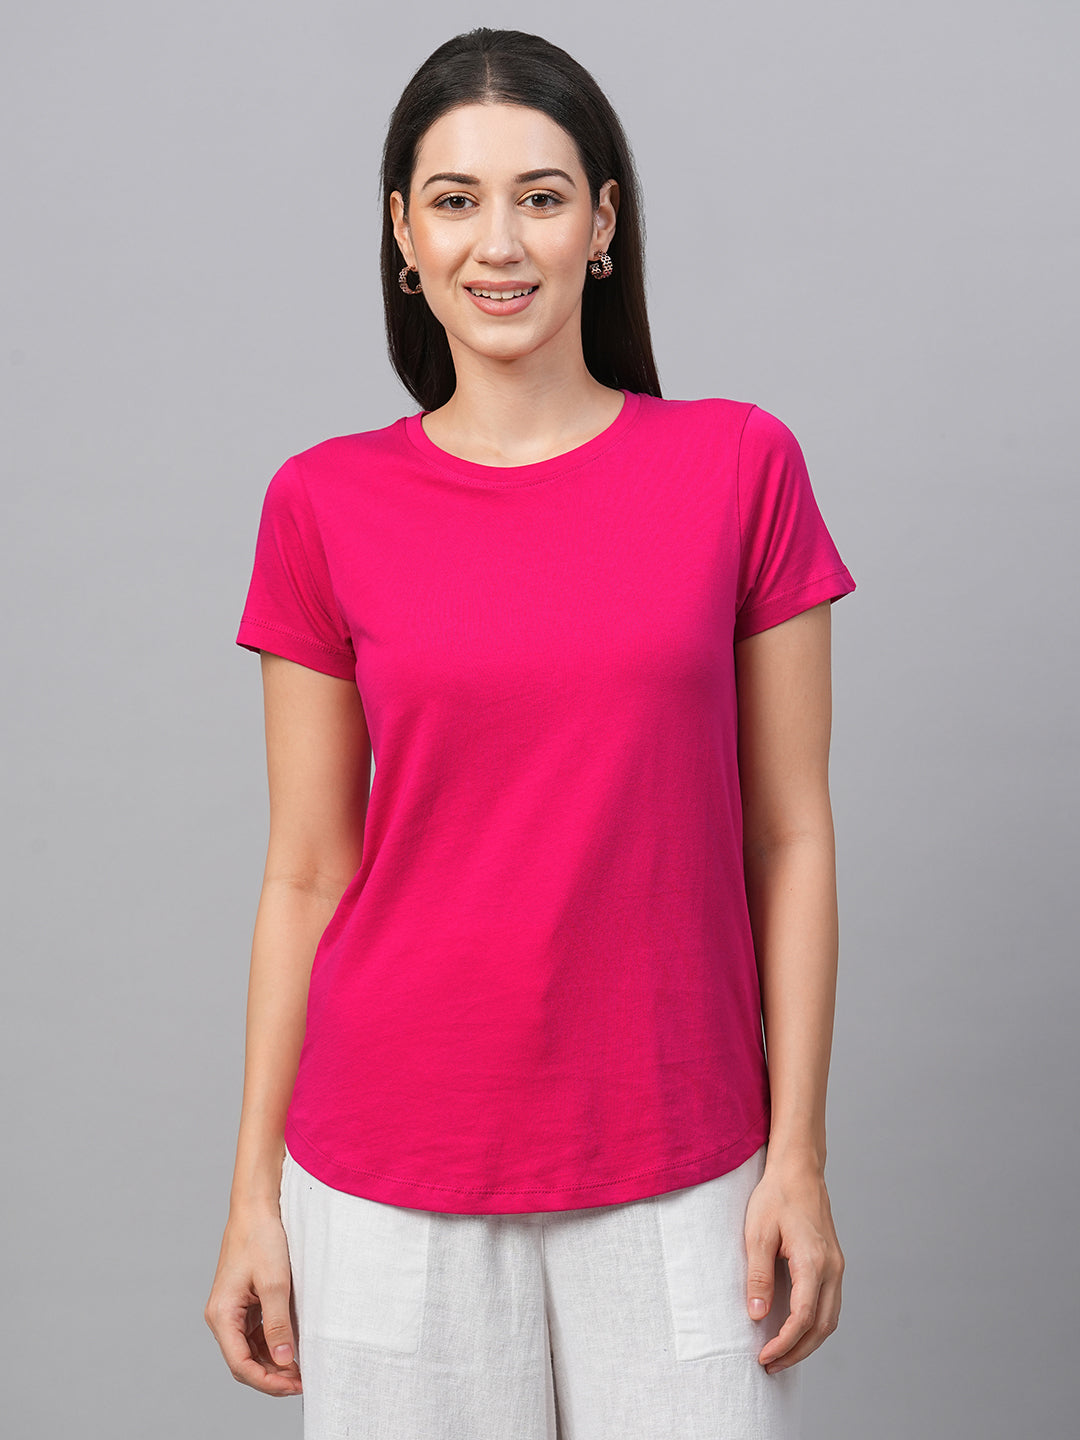 Women's Pink Cotton Slim Fit Tshirt